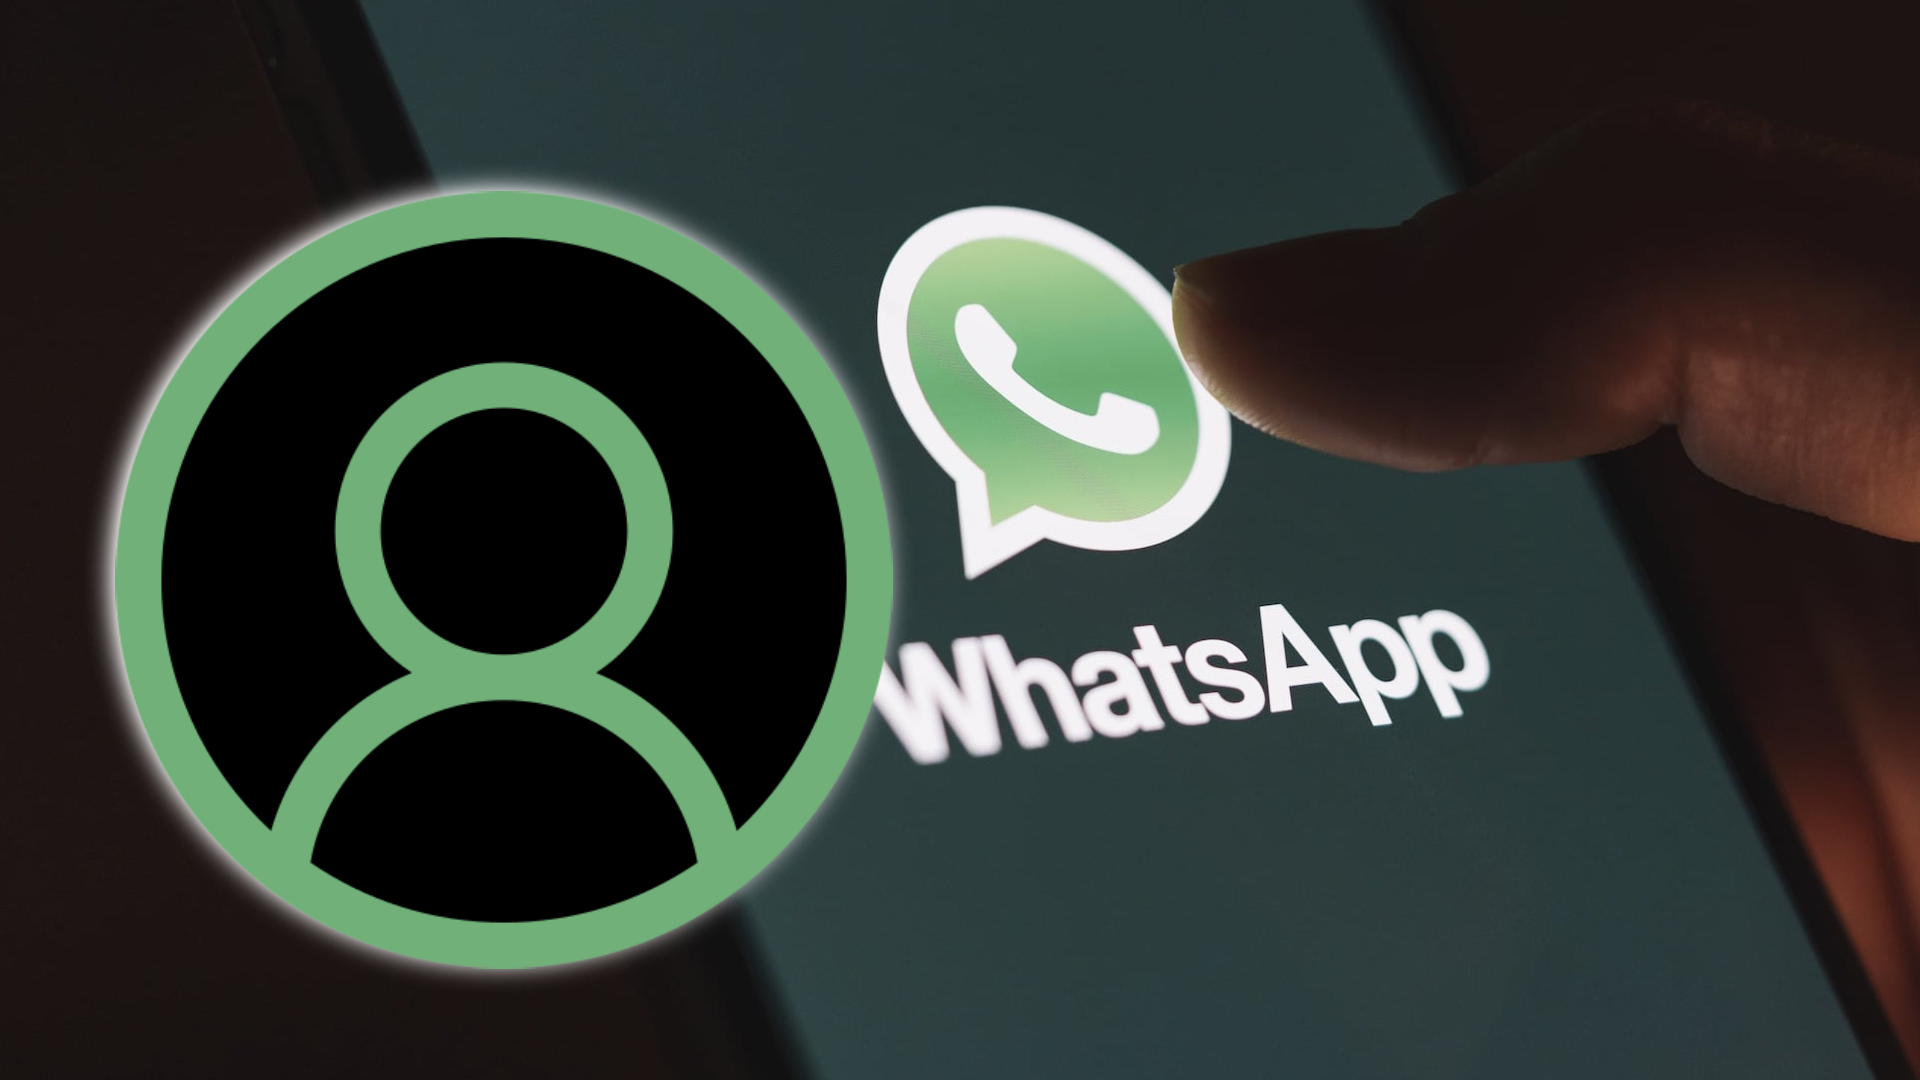 WhatsApp introduce o nouă funcție mult așteptată în aplicație, ce pot face utilizatorii de acum